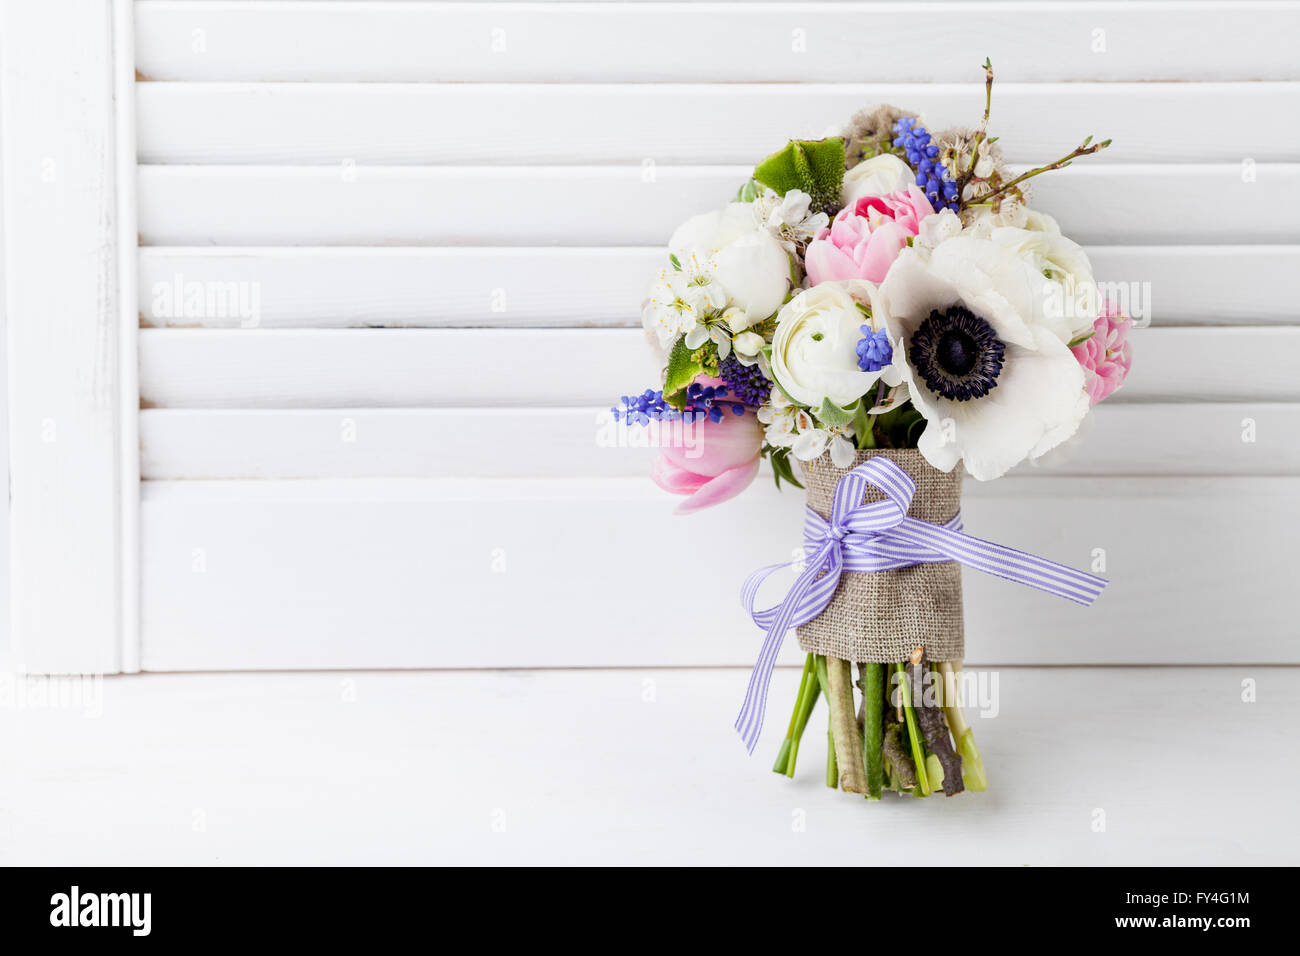 Bouquet de tulipes roses, violettes, muscaris anémones blanc, violet et blanc veronica buttercup avec ruban violet avec wh Banque D'Images